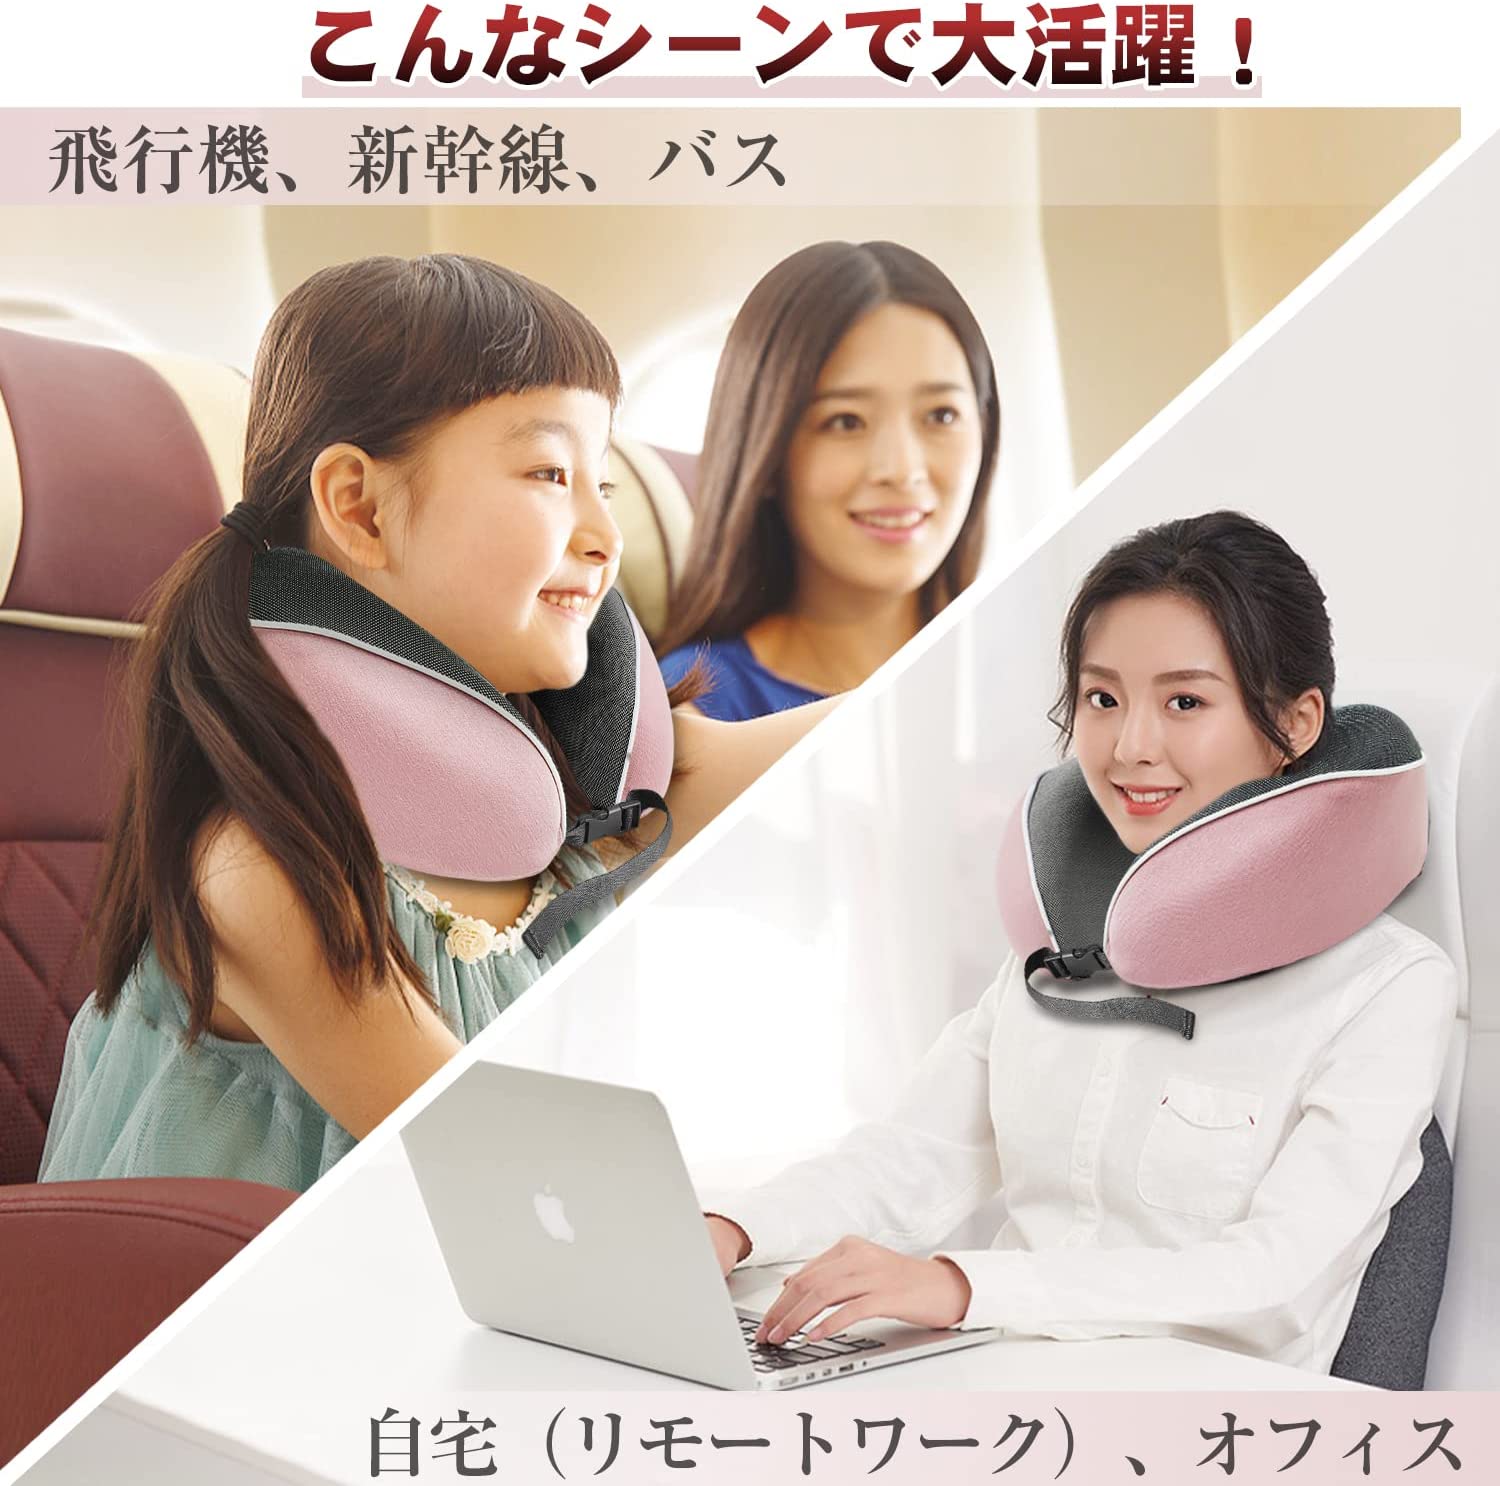 旅する人のU型まくら ネックピロー 携帯枕 トラベルピロー 首枕 低反発